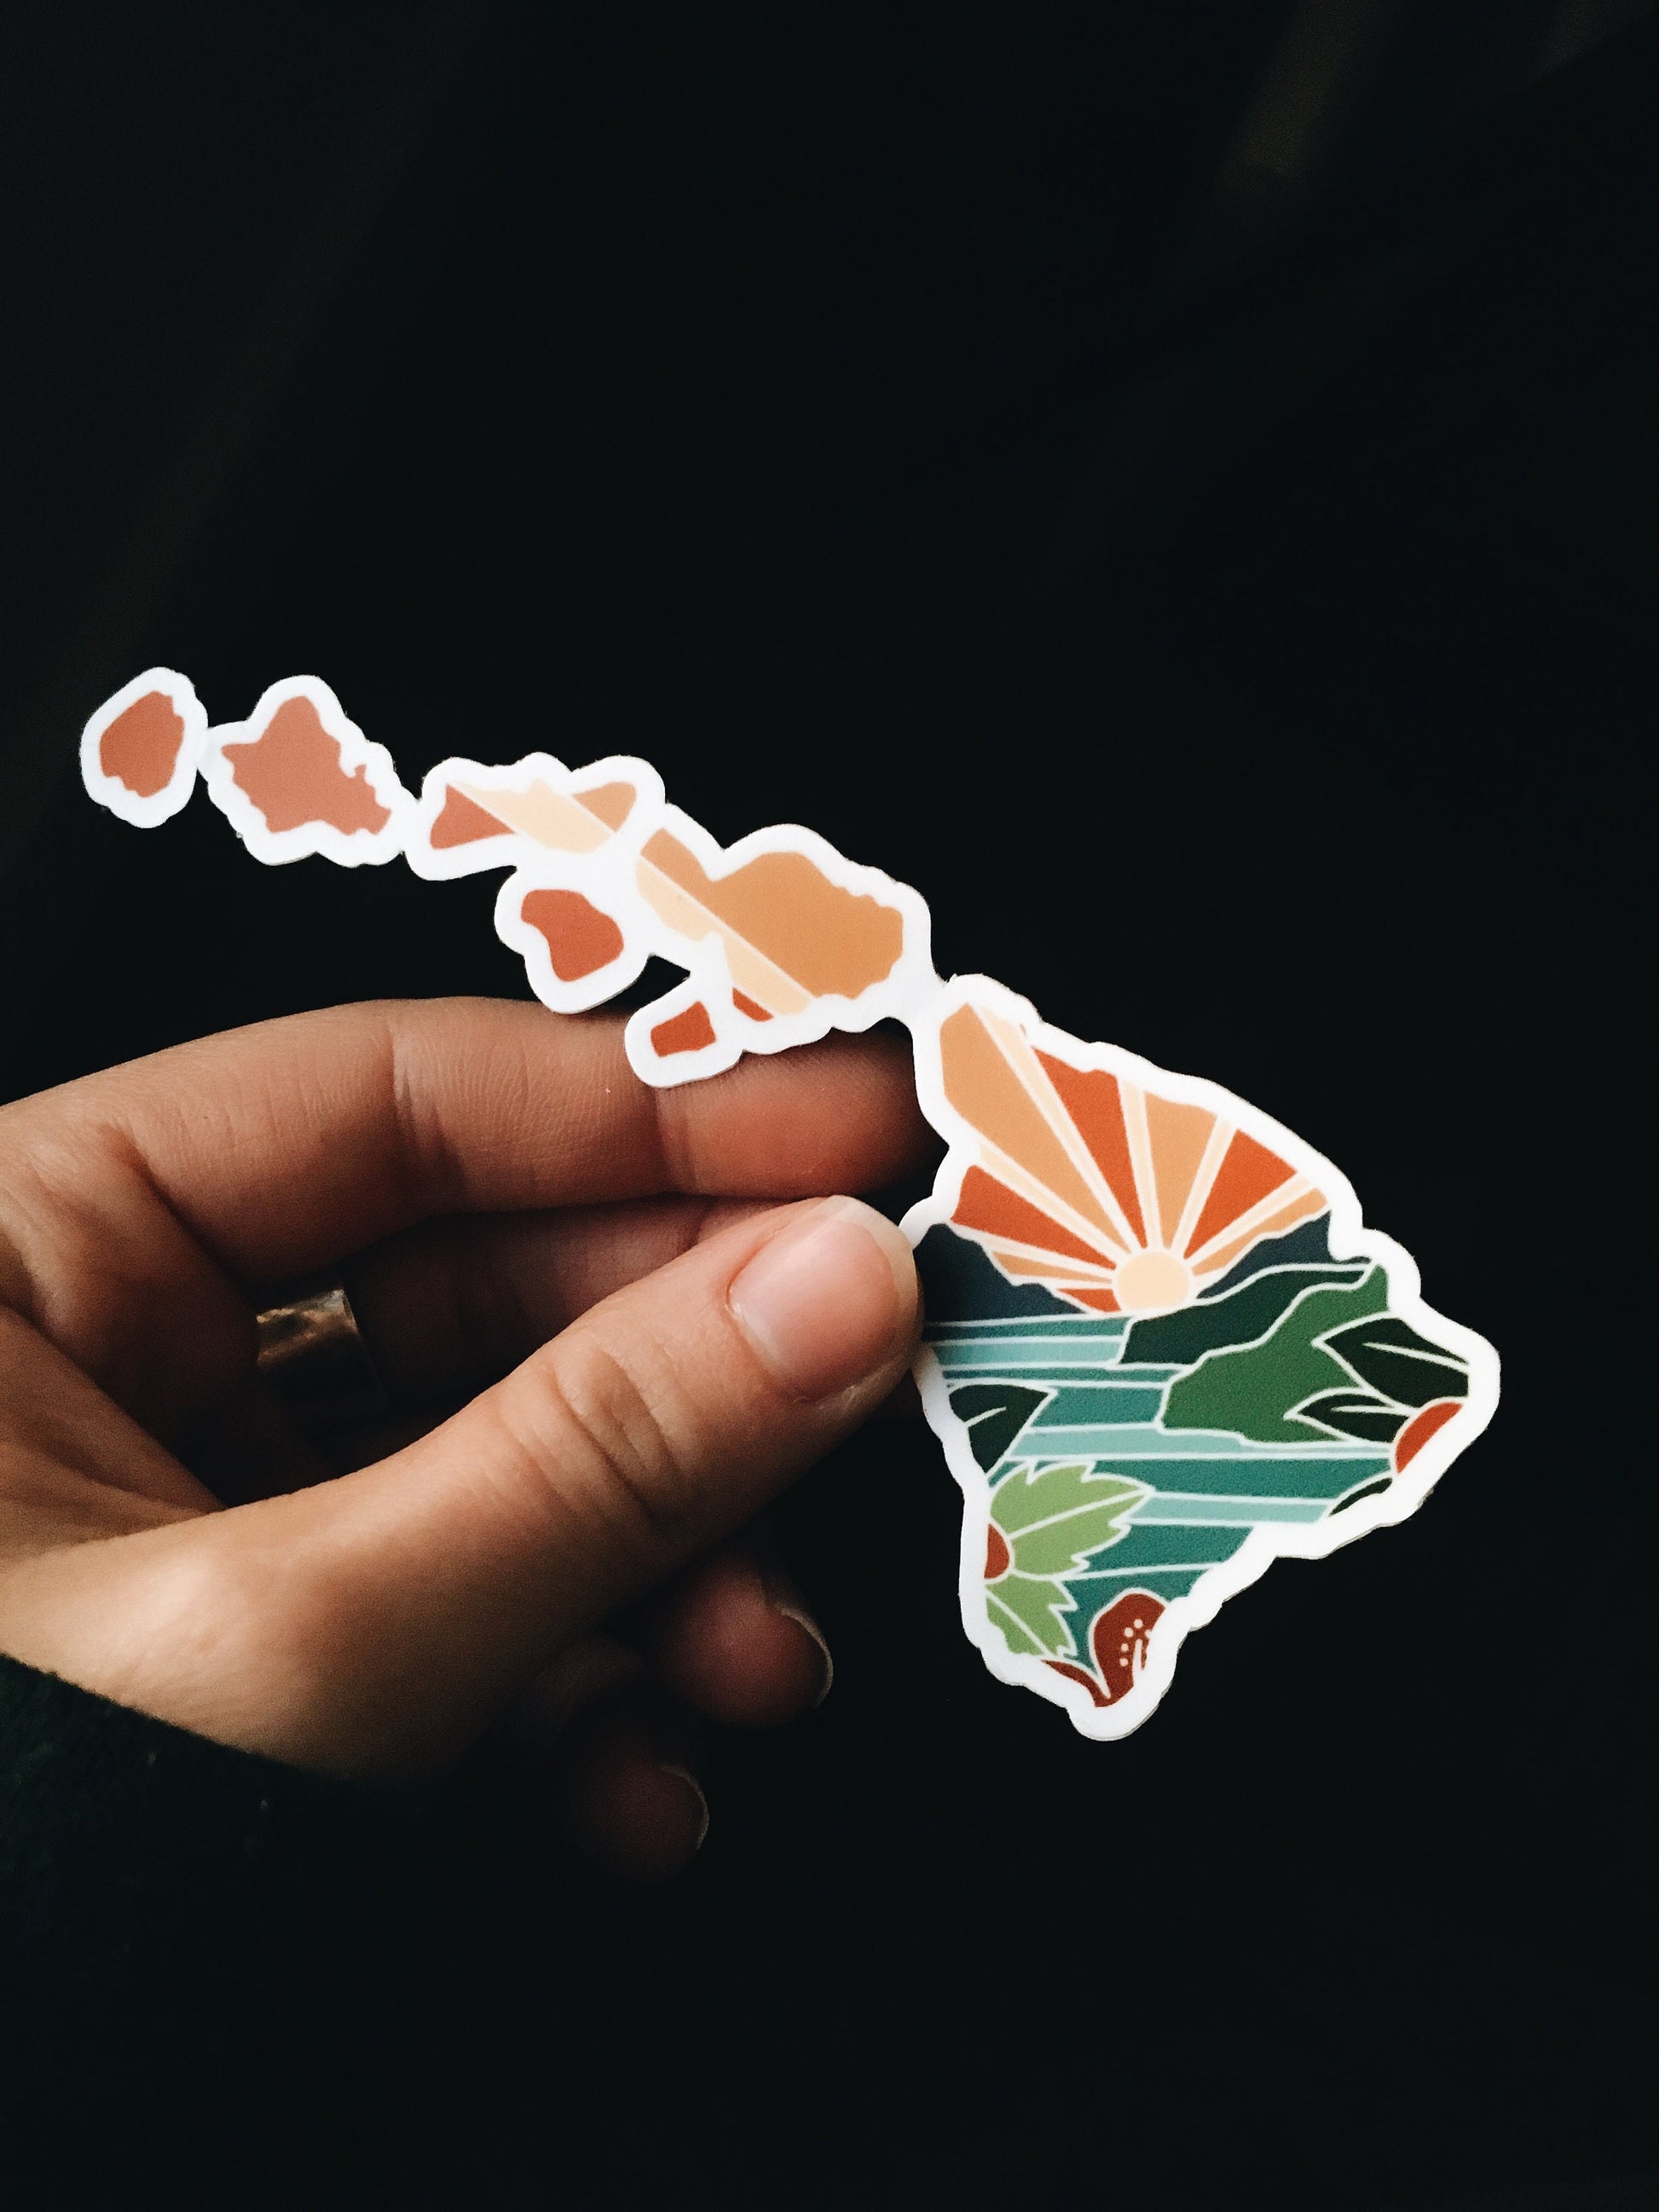 Hawaii Weatherproof Sticker | Durable Vinyl Decal | Hawaii Outline | Illustrated State Sticker | Outdoor Sticker | Bumper Sticker | 4"